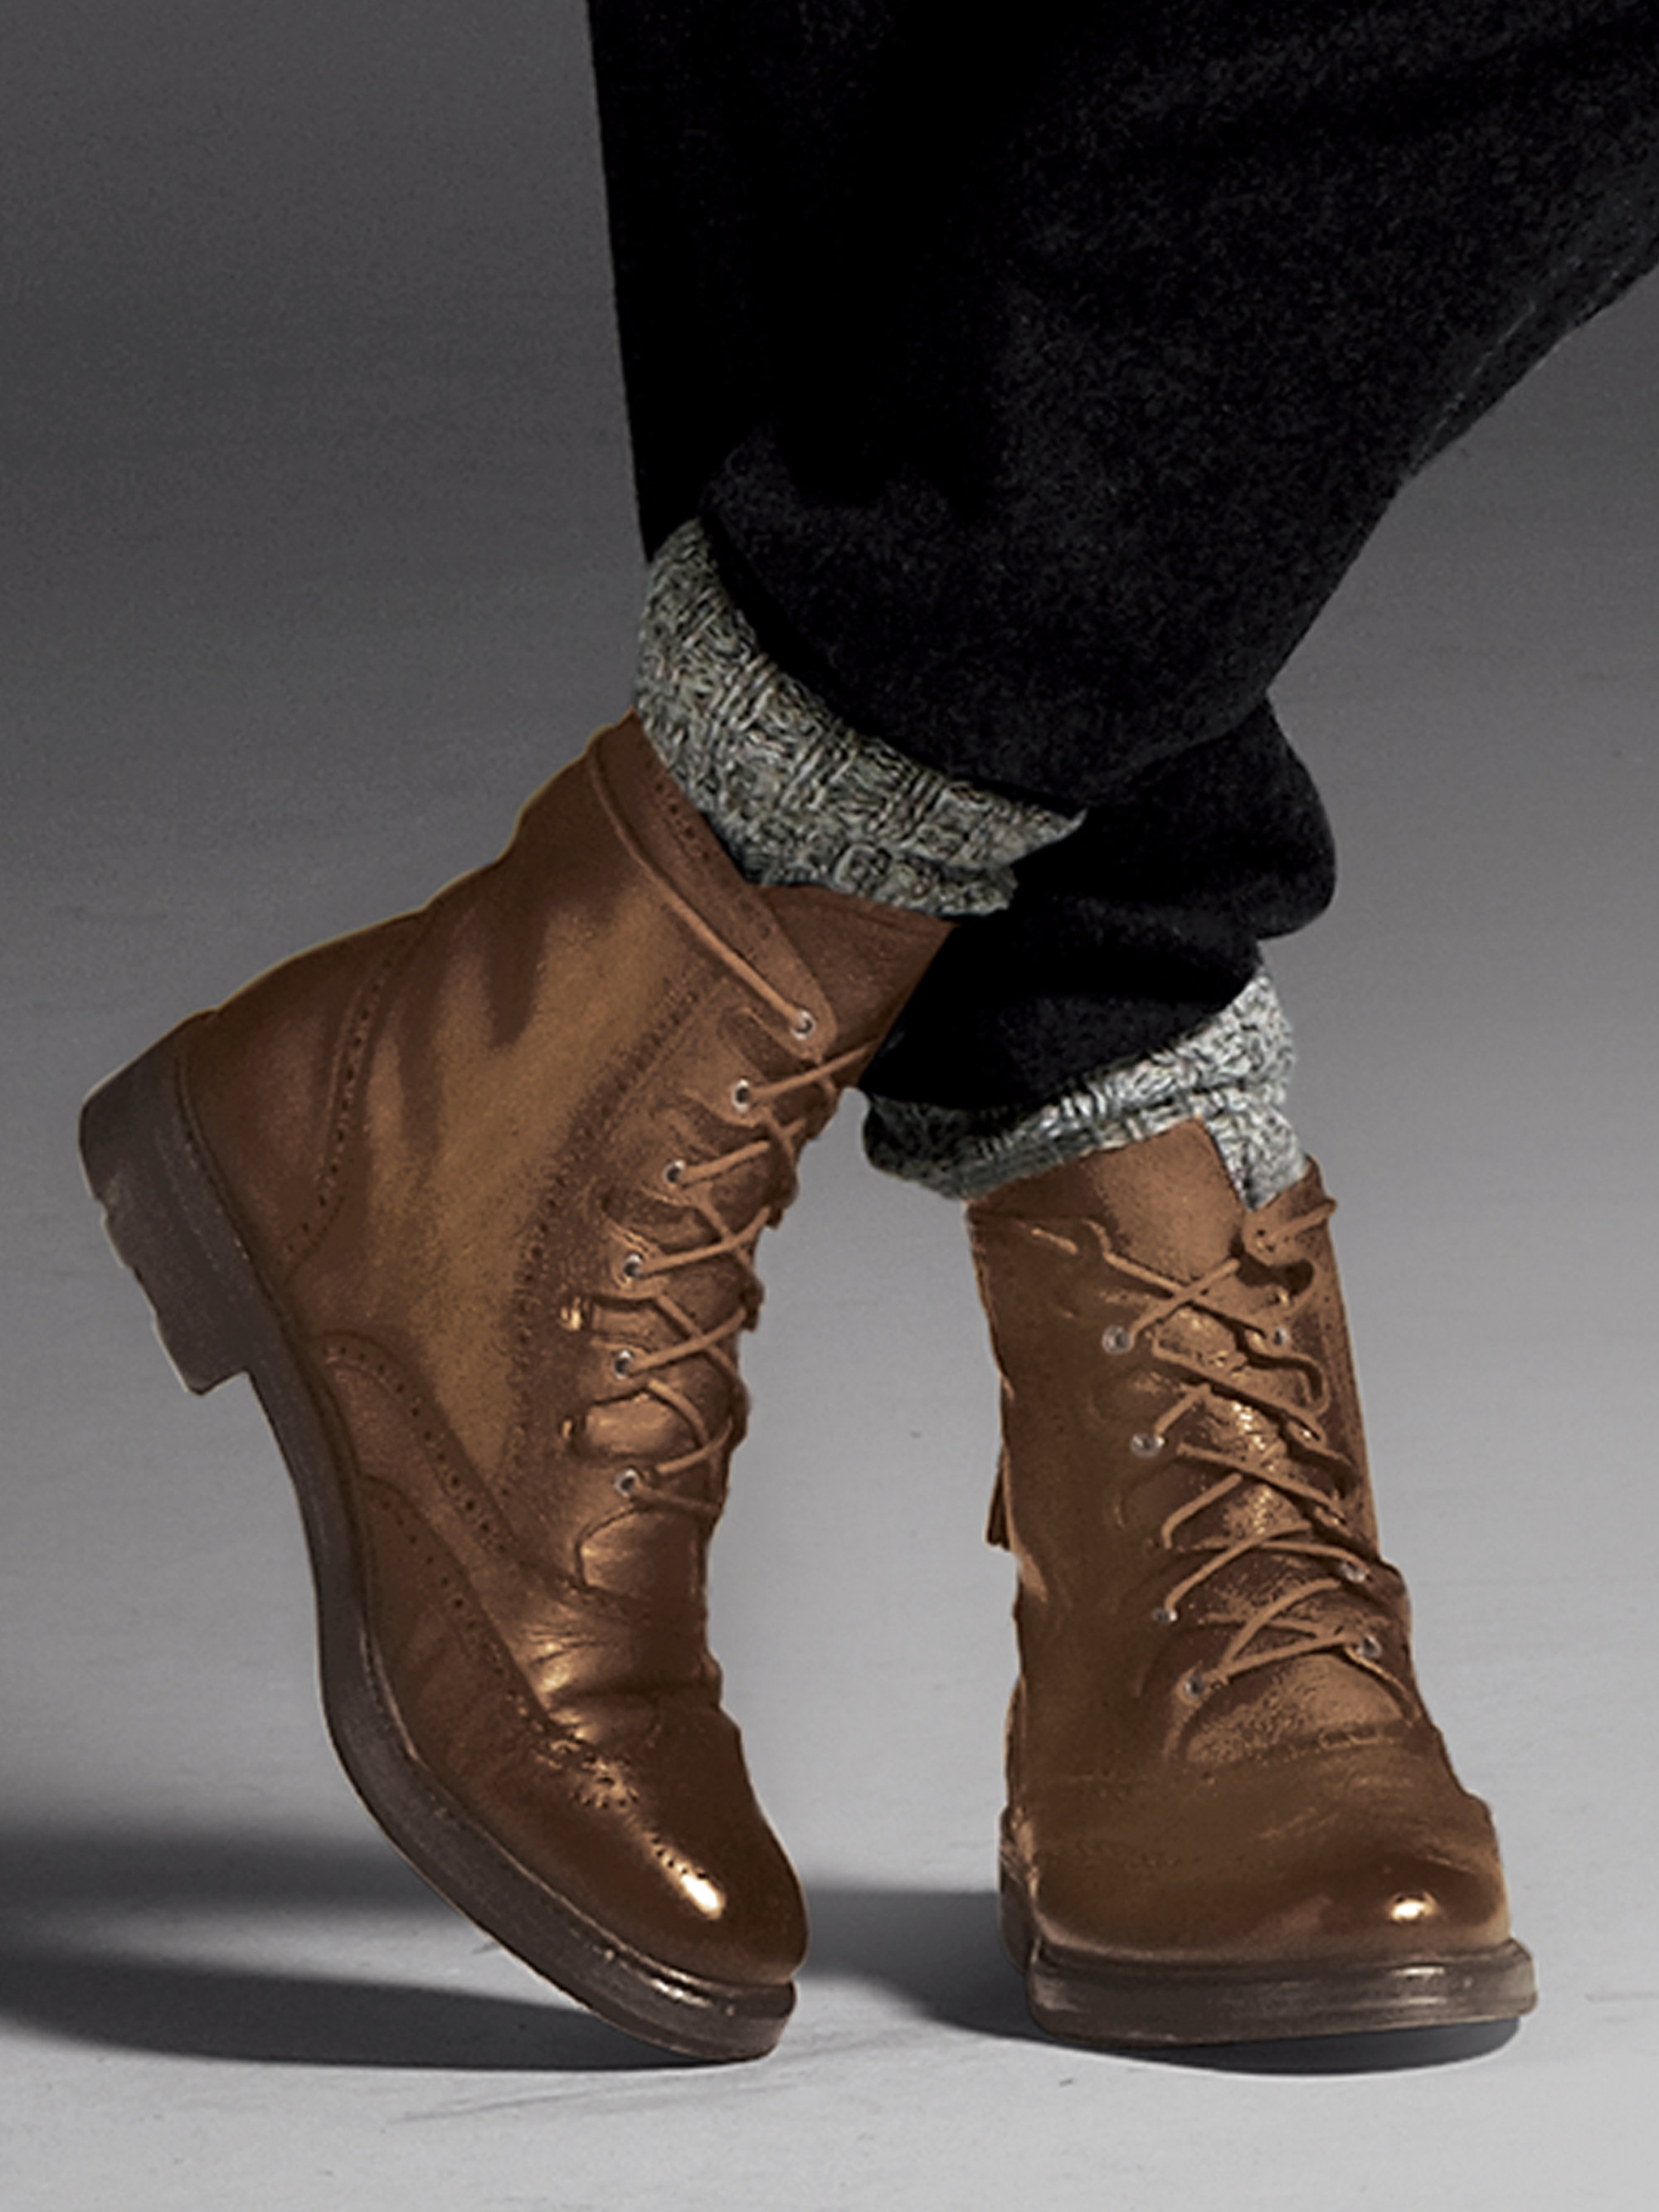 ralph lauren men's leather boots